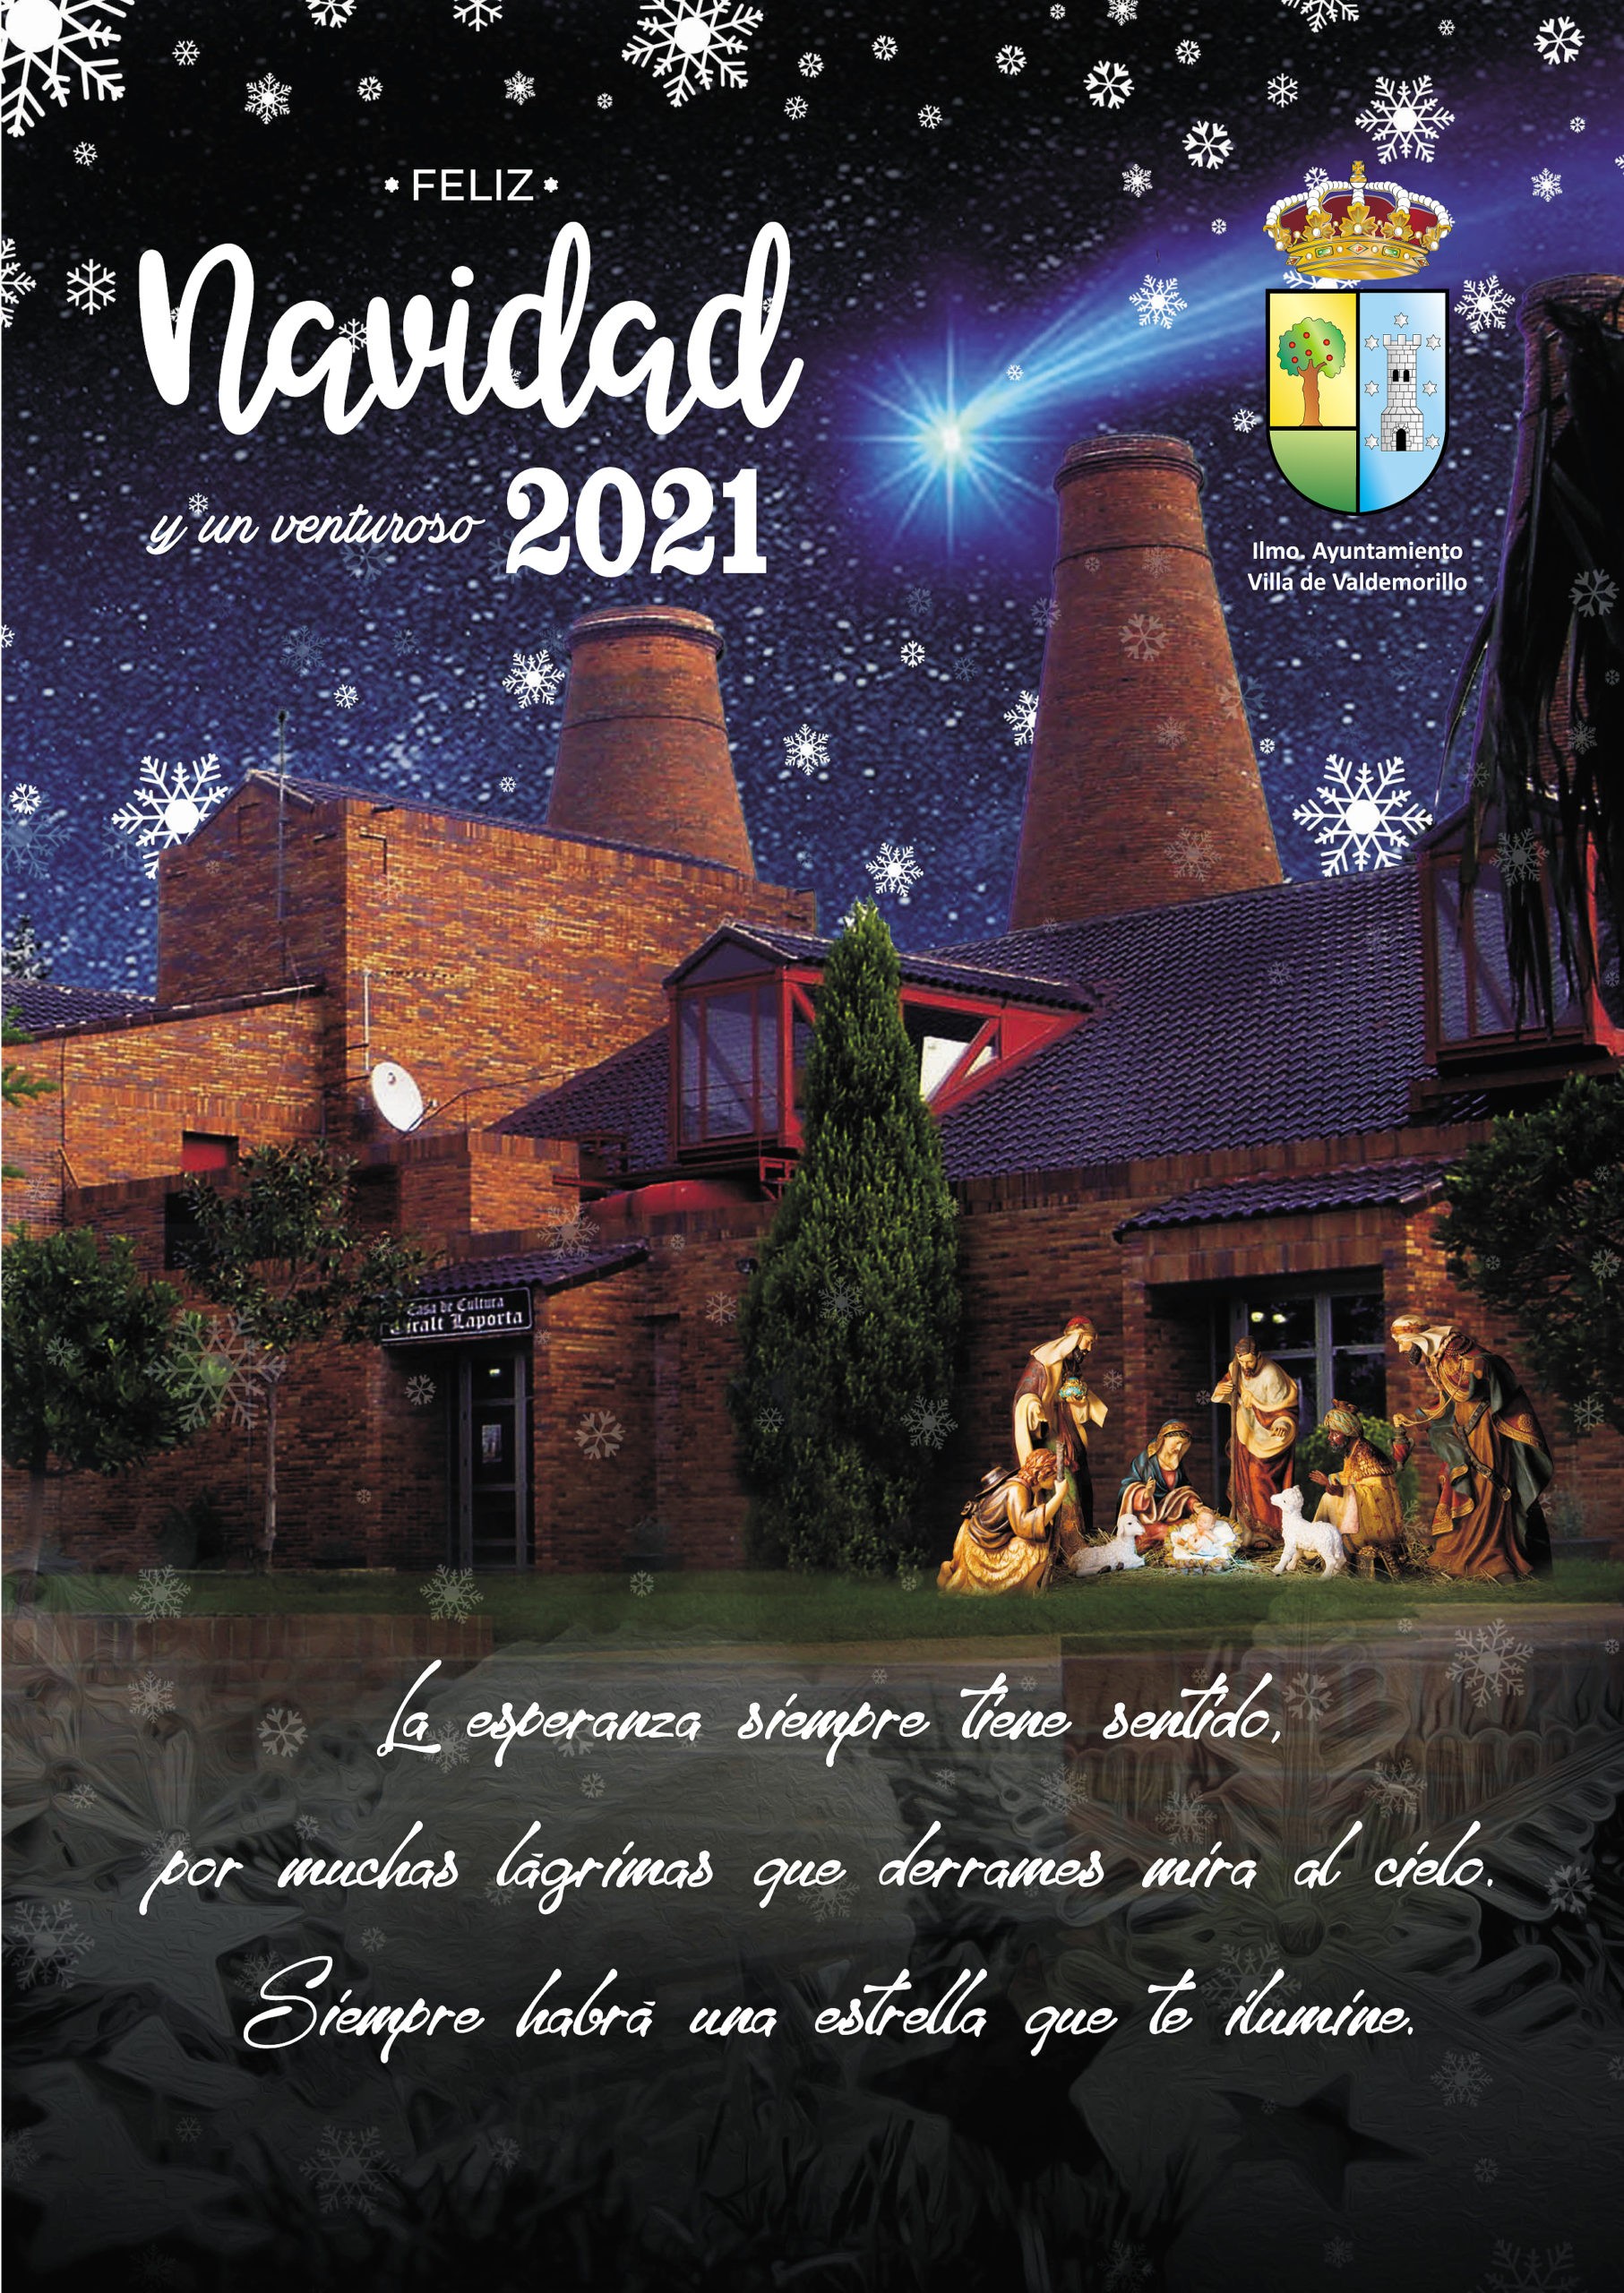 Valdemorillo felicita a sus vecinos  con otra creativa ilustración de Rafael Garcinuño,  ganador un año más del concurso que premia la mejor estampa navideña a nivel local